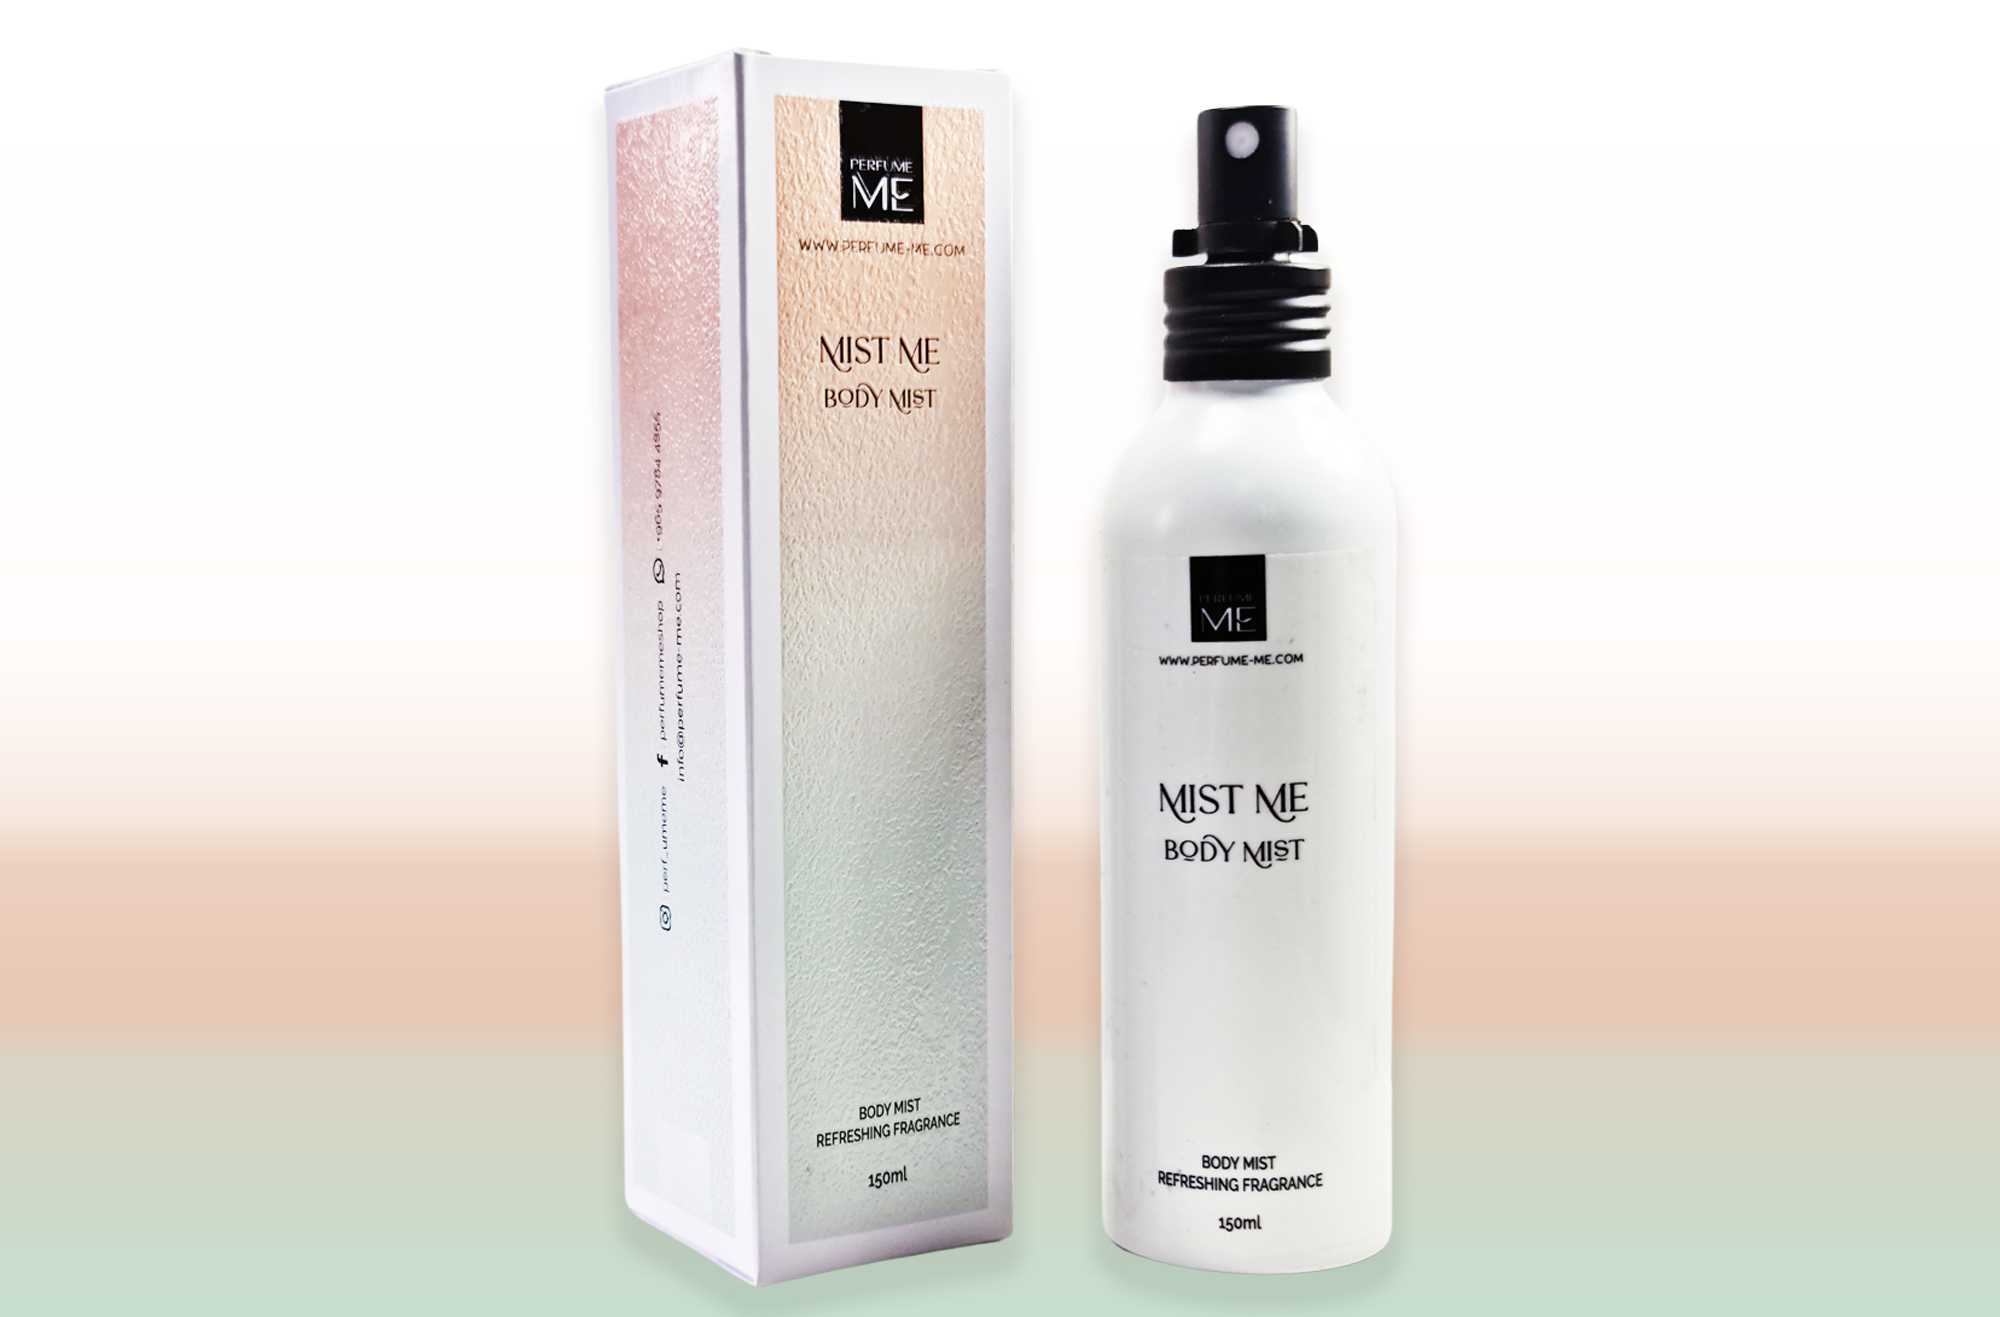 Perfume ME 407: Similar To L'Immensité By Louis Vuitton